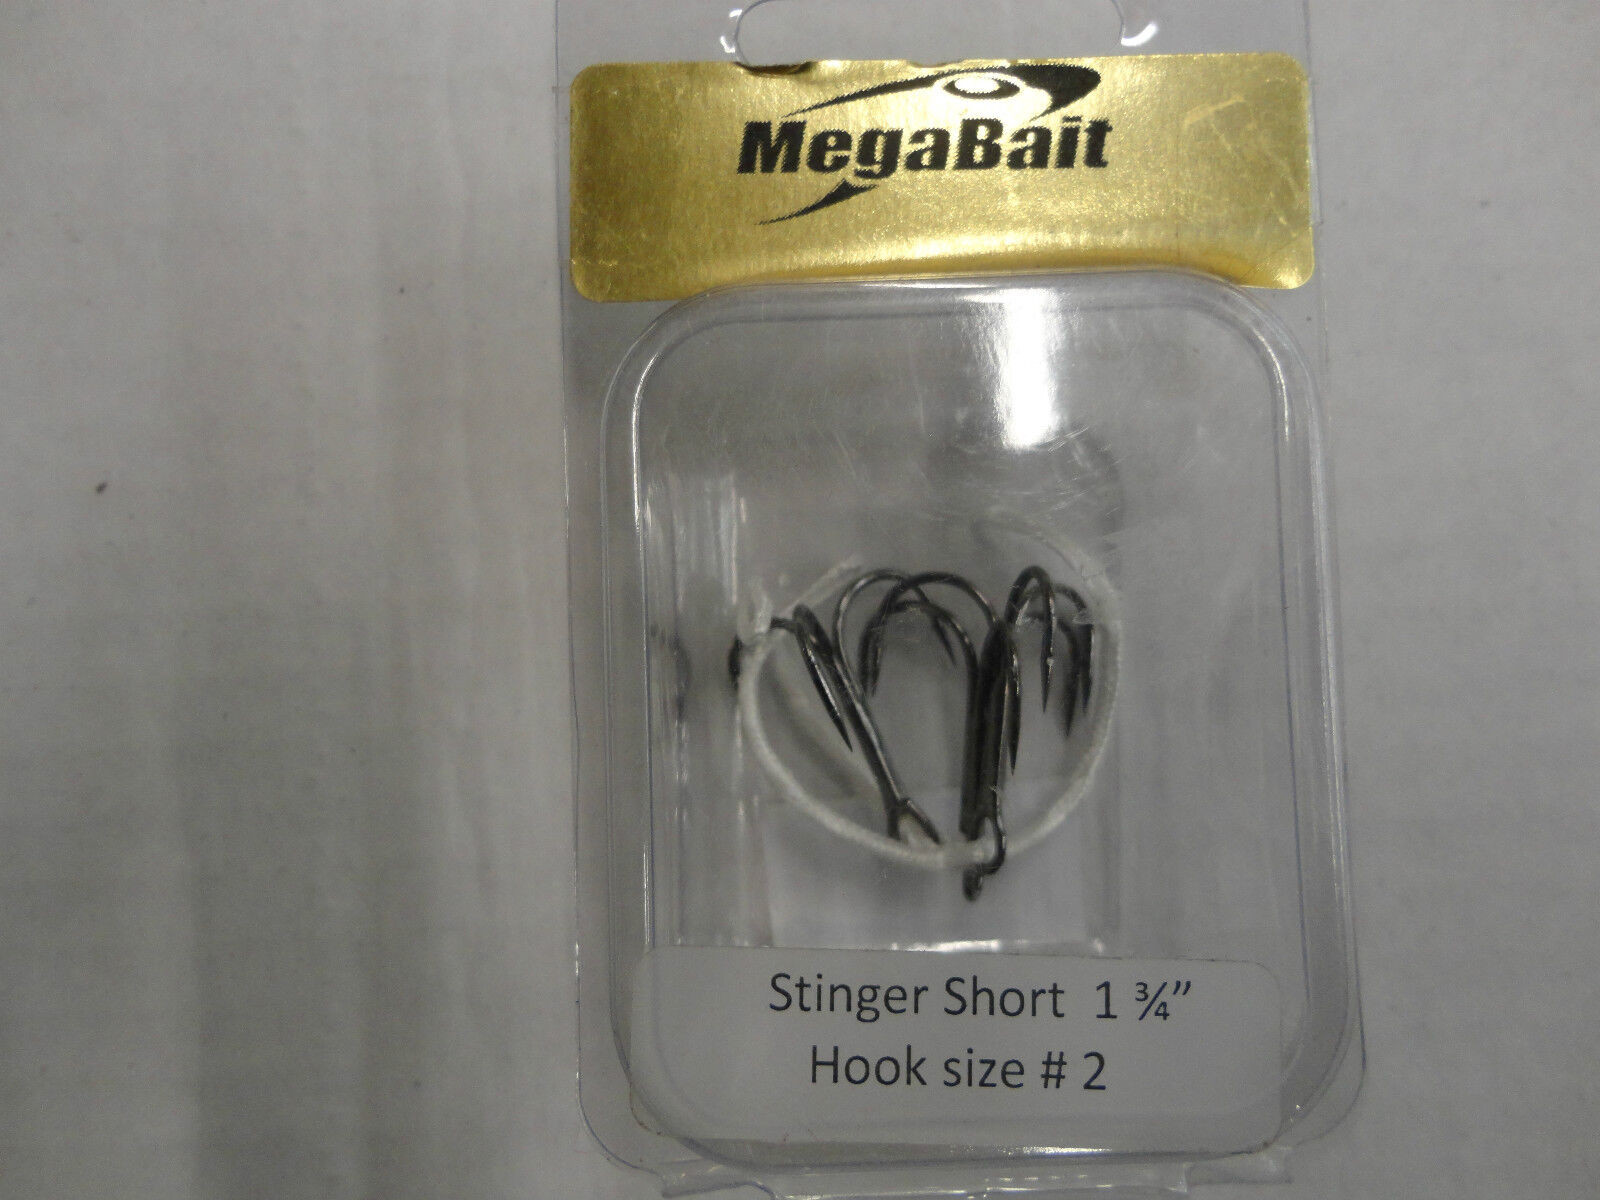 Megabait Stringer "short" 1 3/4", Treble Hook Size 2 (new/old Stock)